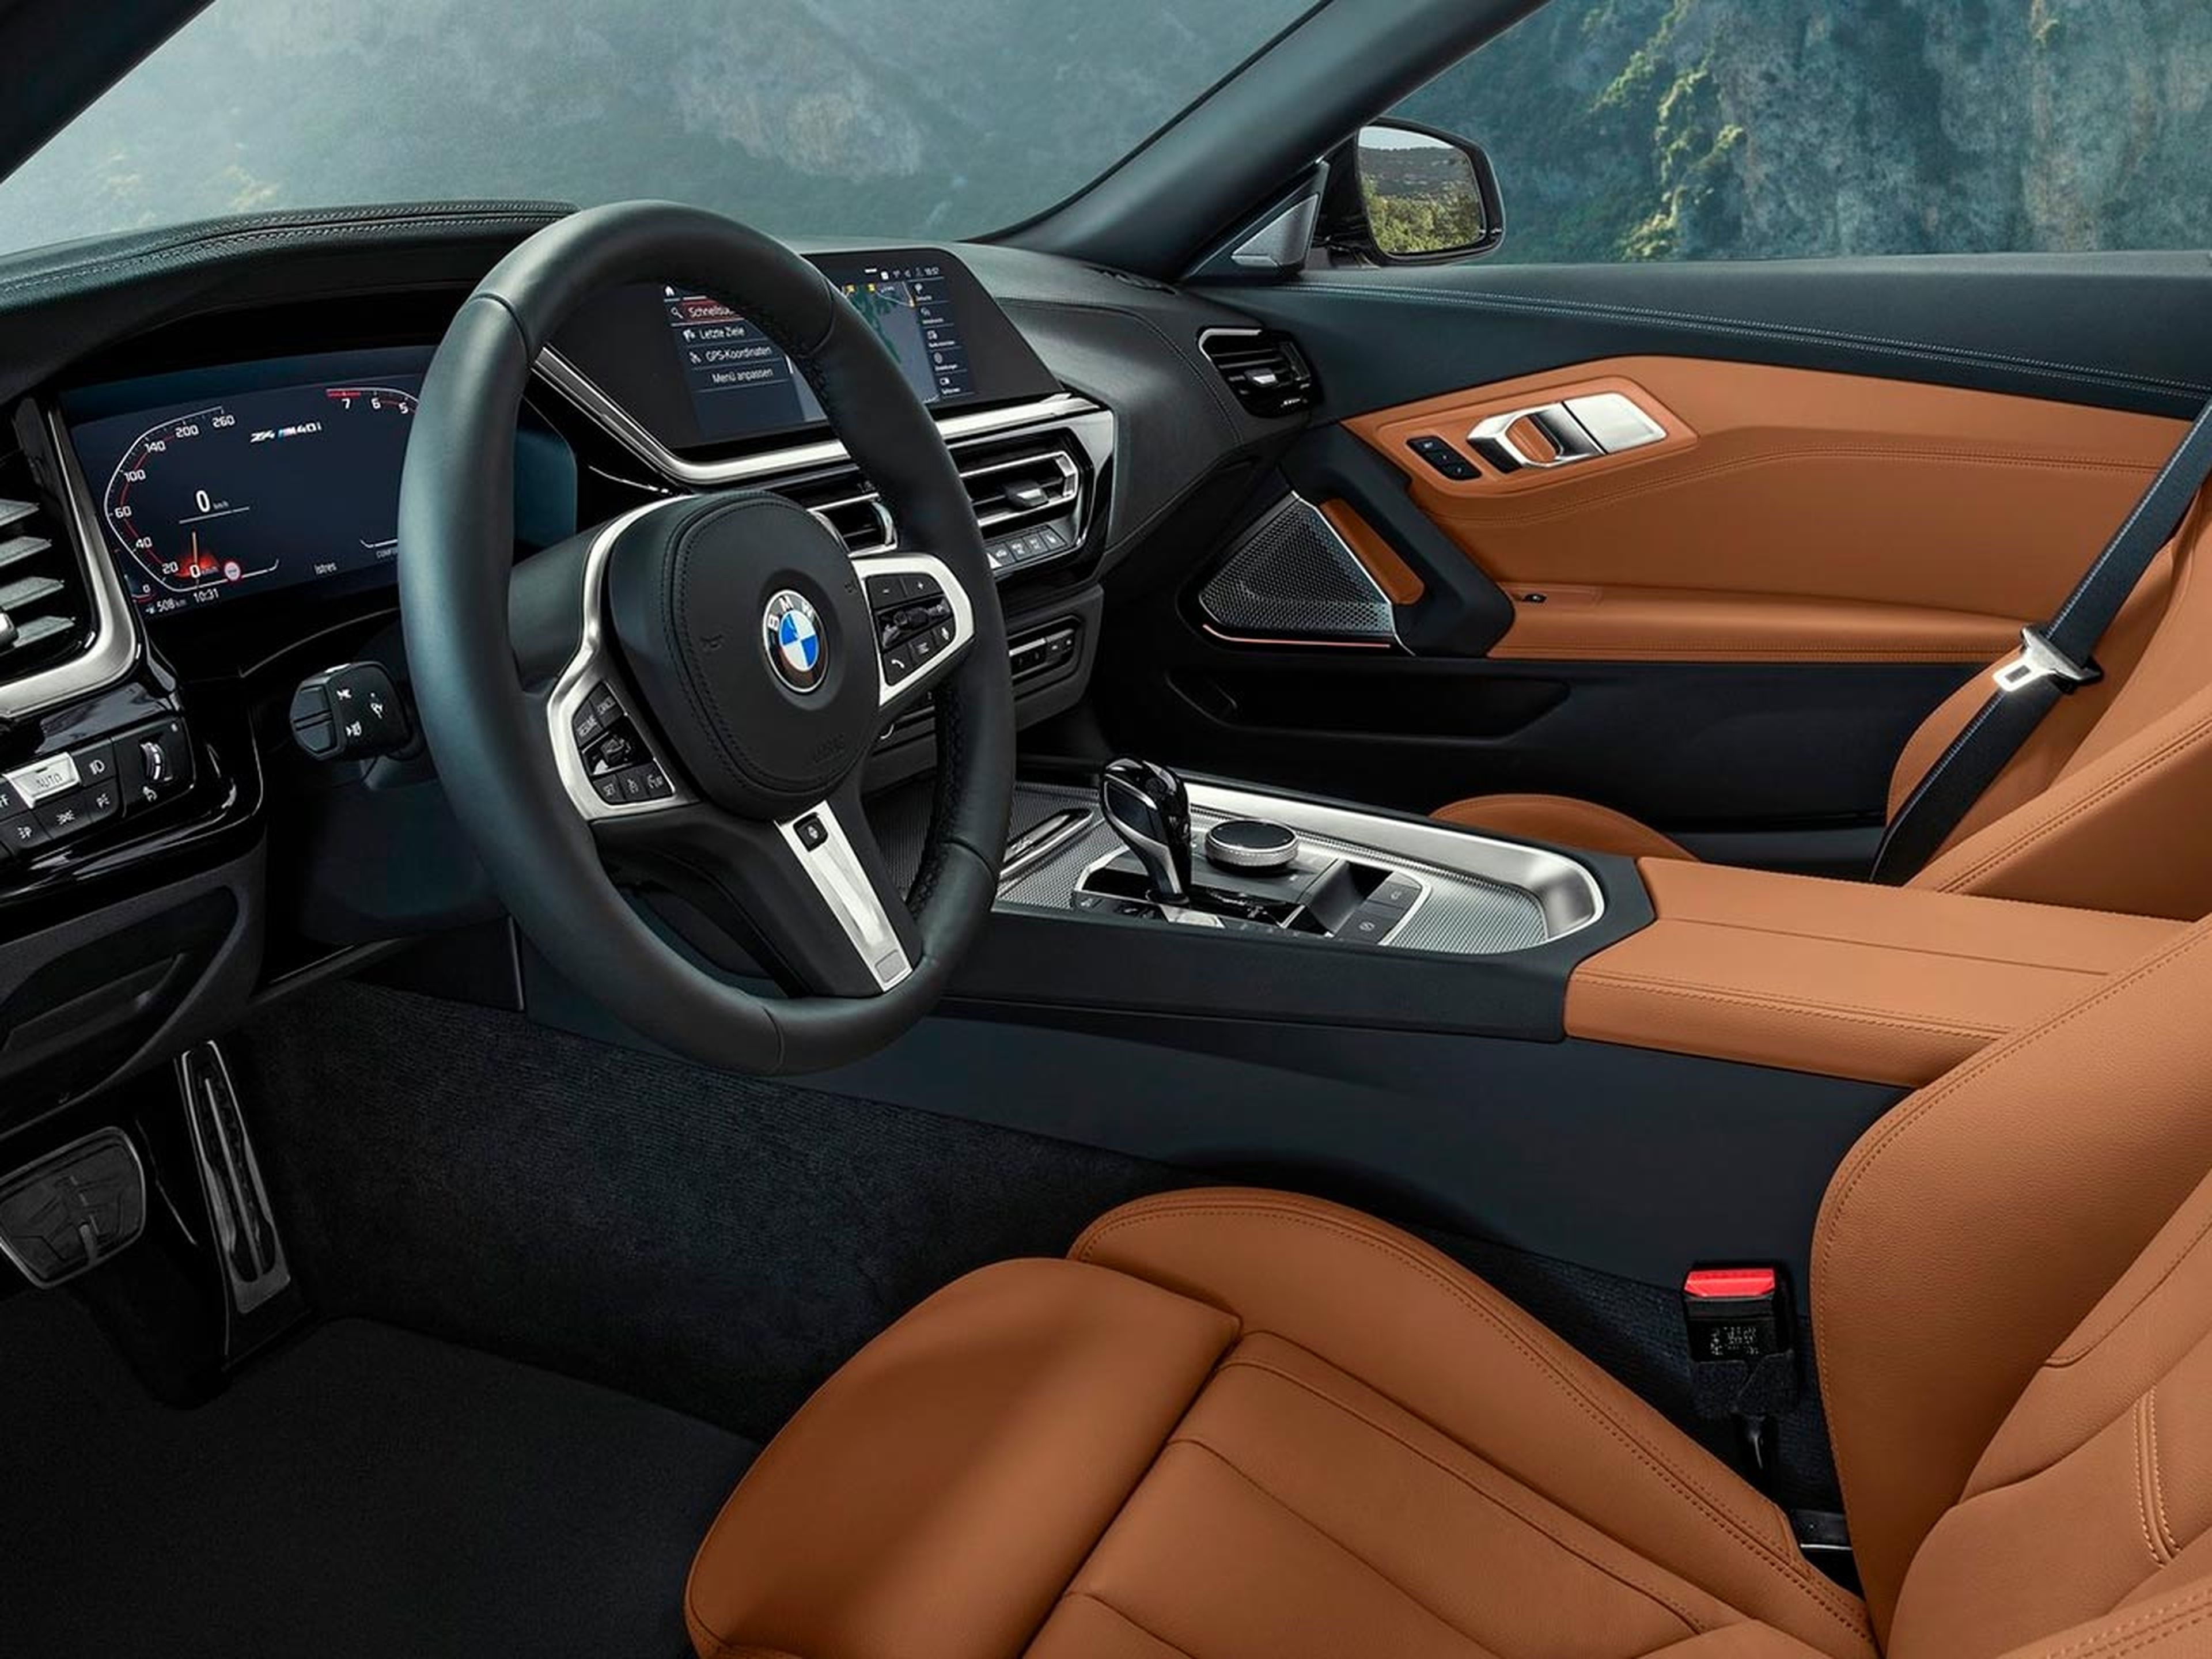 Interior BMW Z4